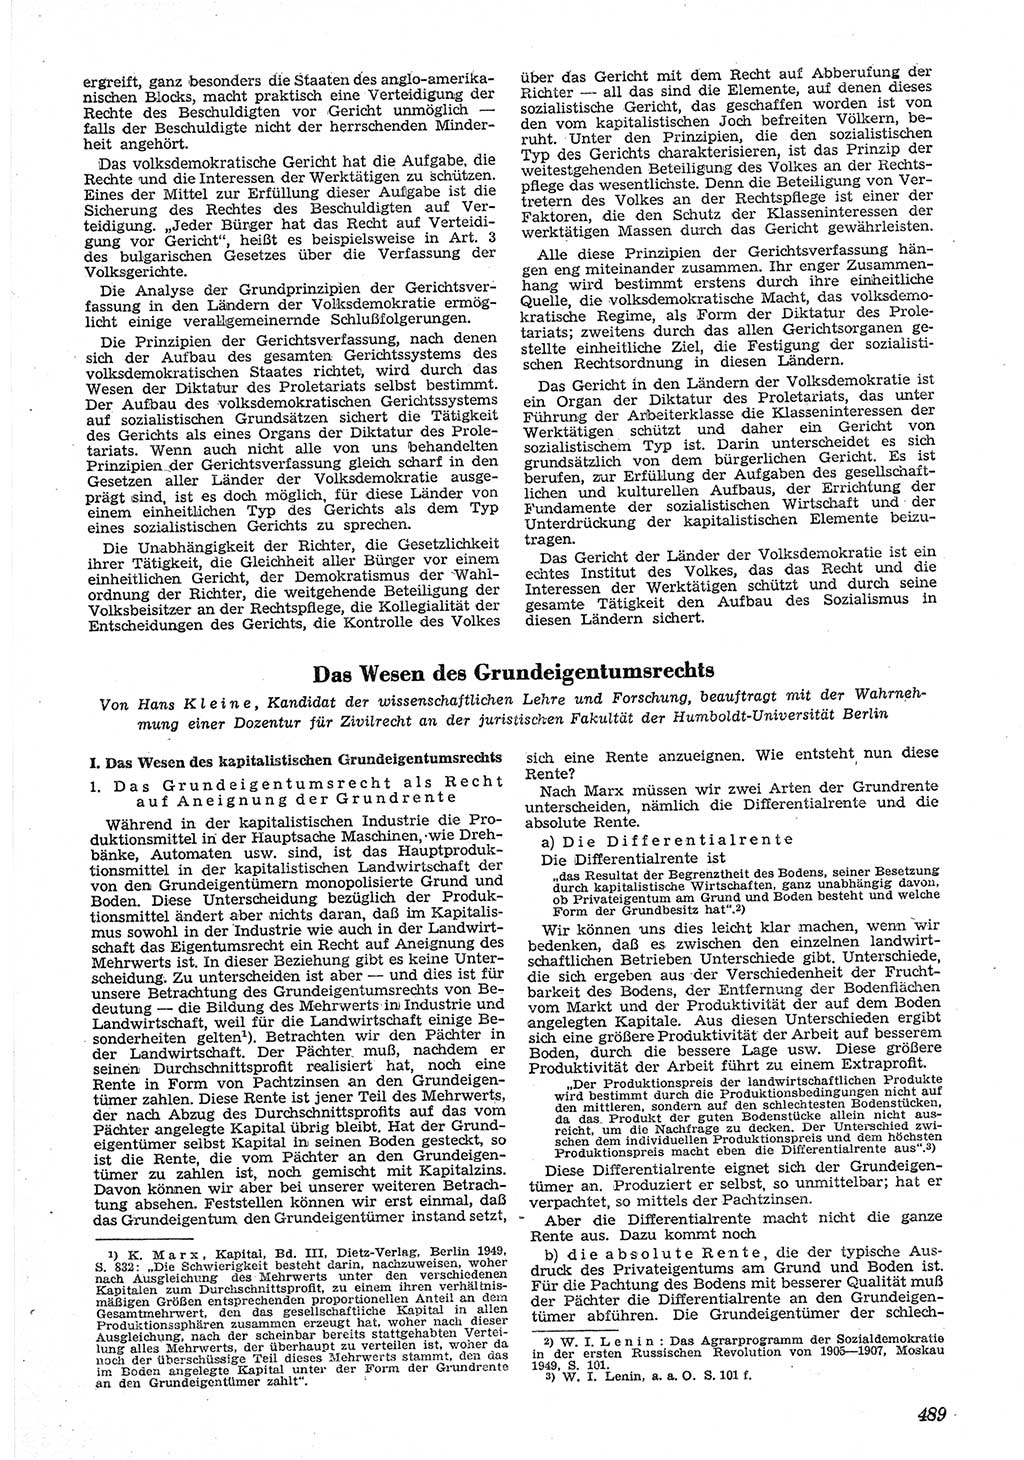 Neue Justiz (NJ), Zeitschrift für Recht und Rechtswissenschaft [Deutsche Demokratische Republik (DDR)], 5. Jahrgang 1951, Seite 489 (NJ DDR 1951, S. 489)